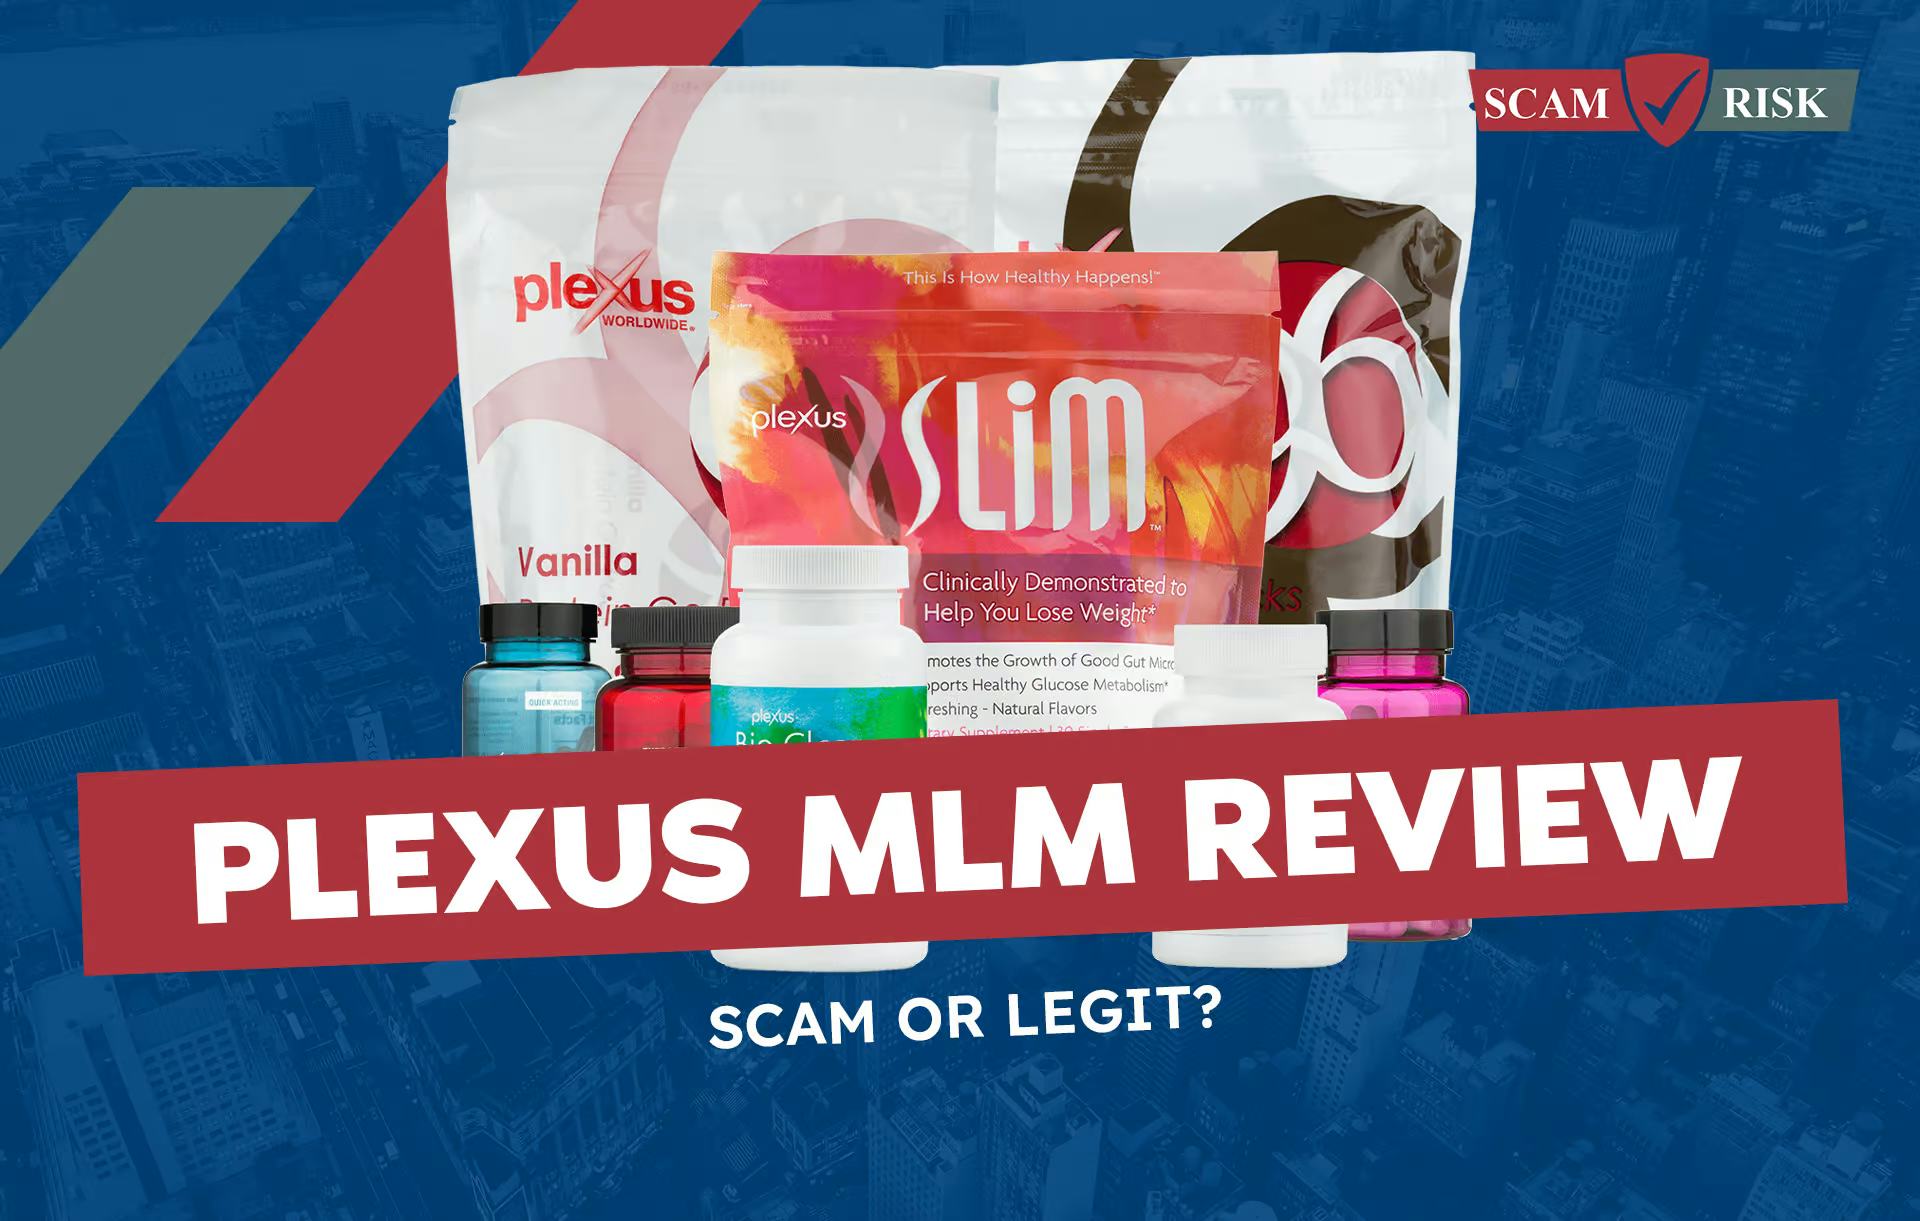 Plexus MLM Review: Scam or Legit?